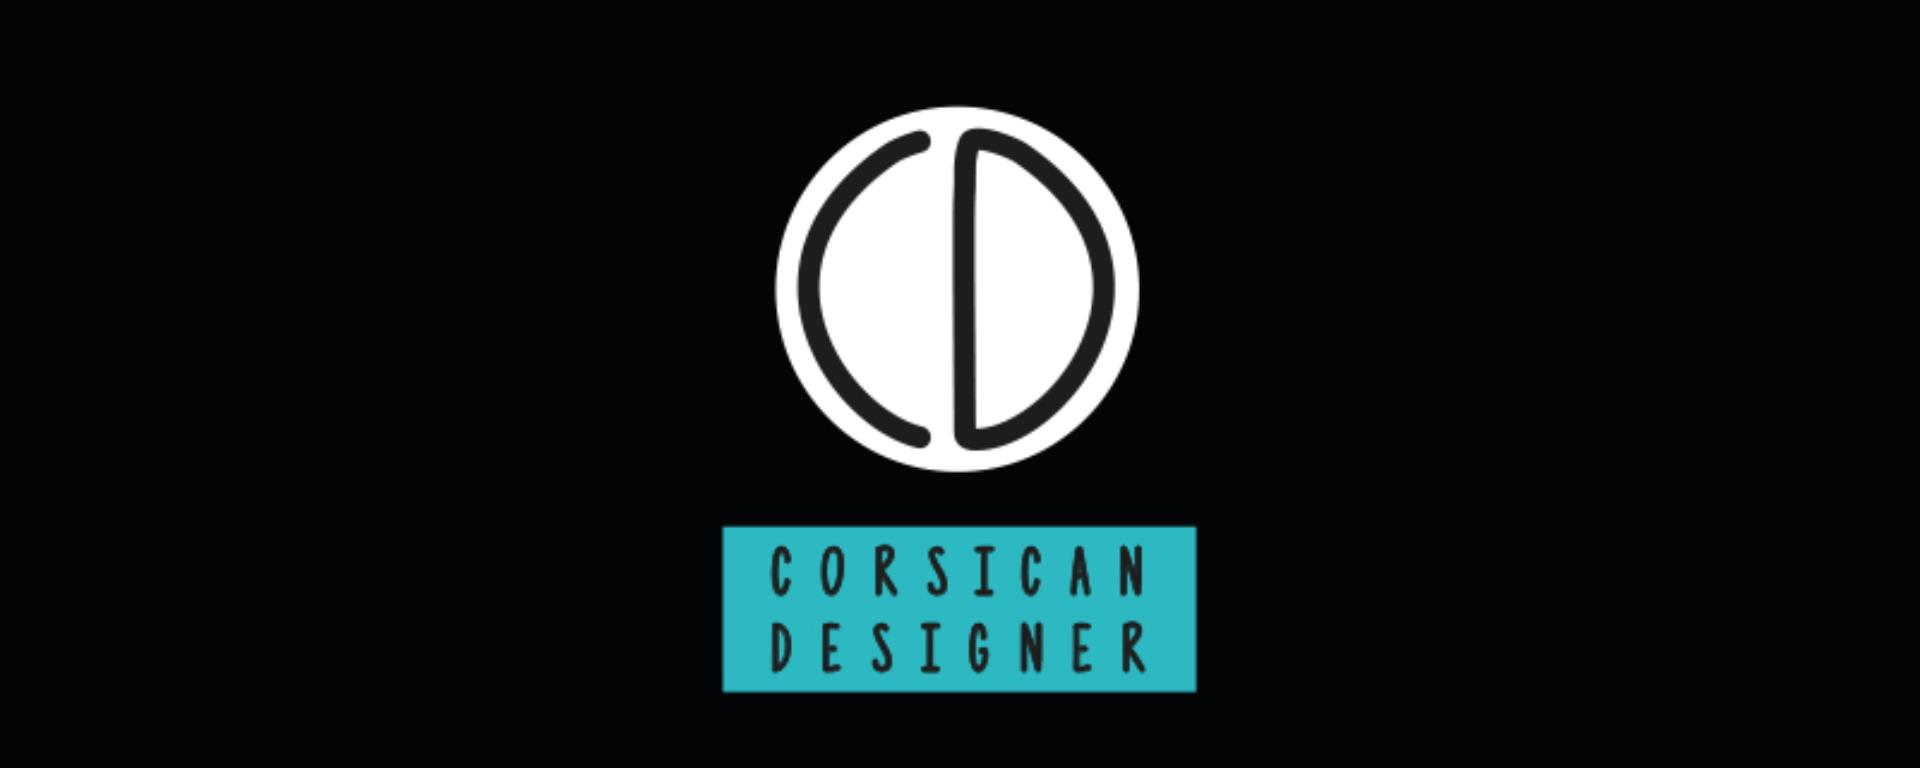 2018- Corsican Designer- logo  @OIT